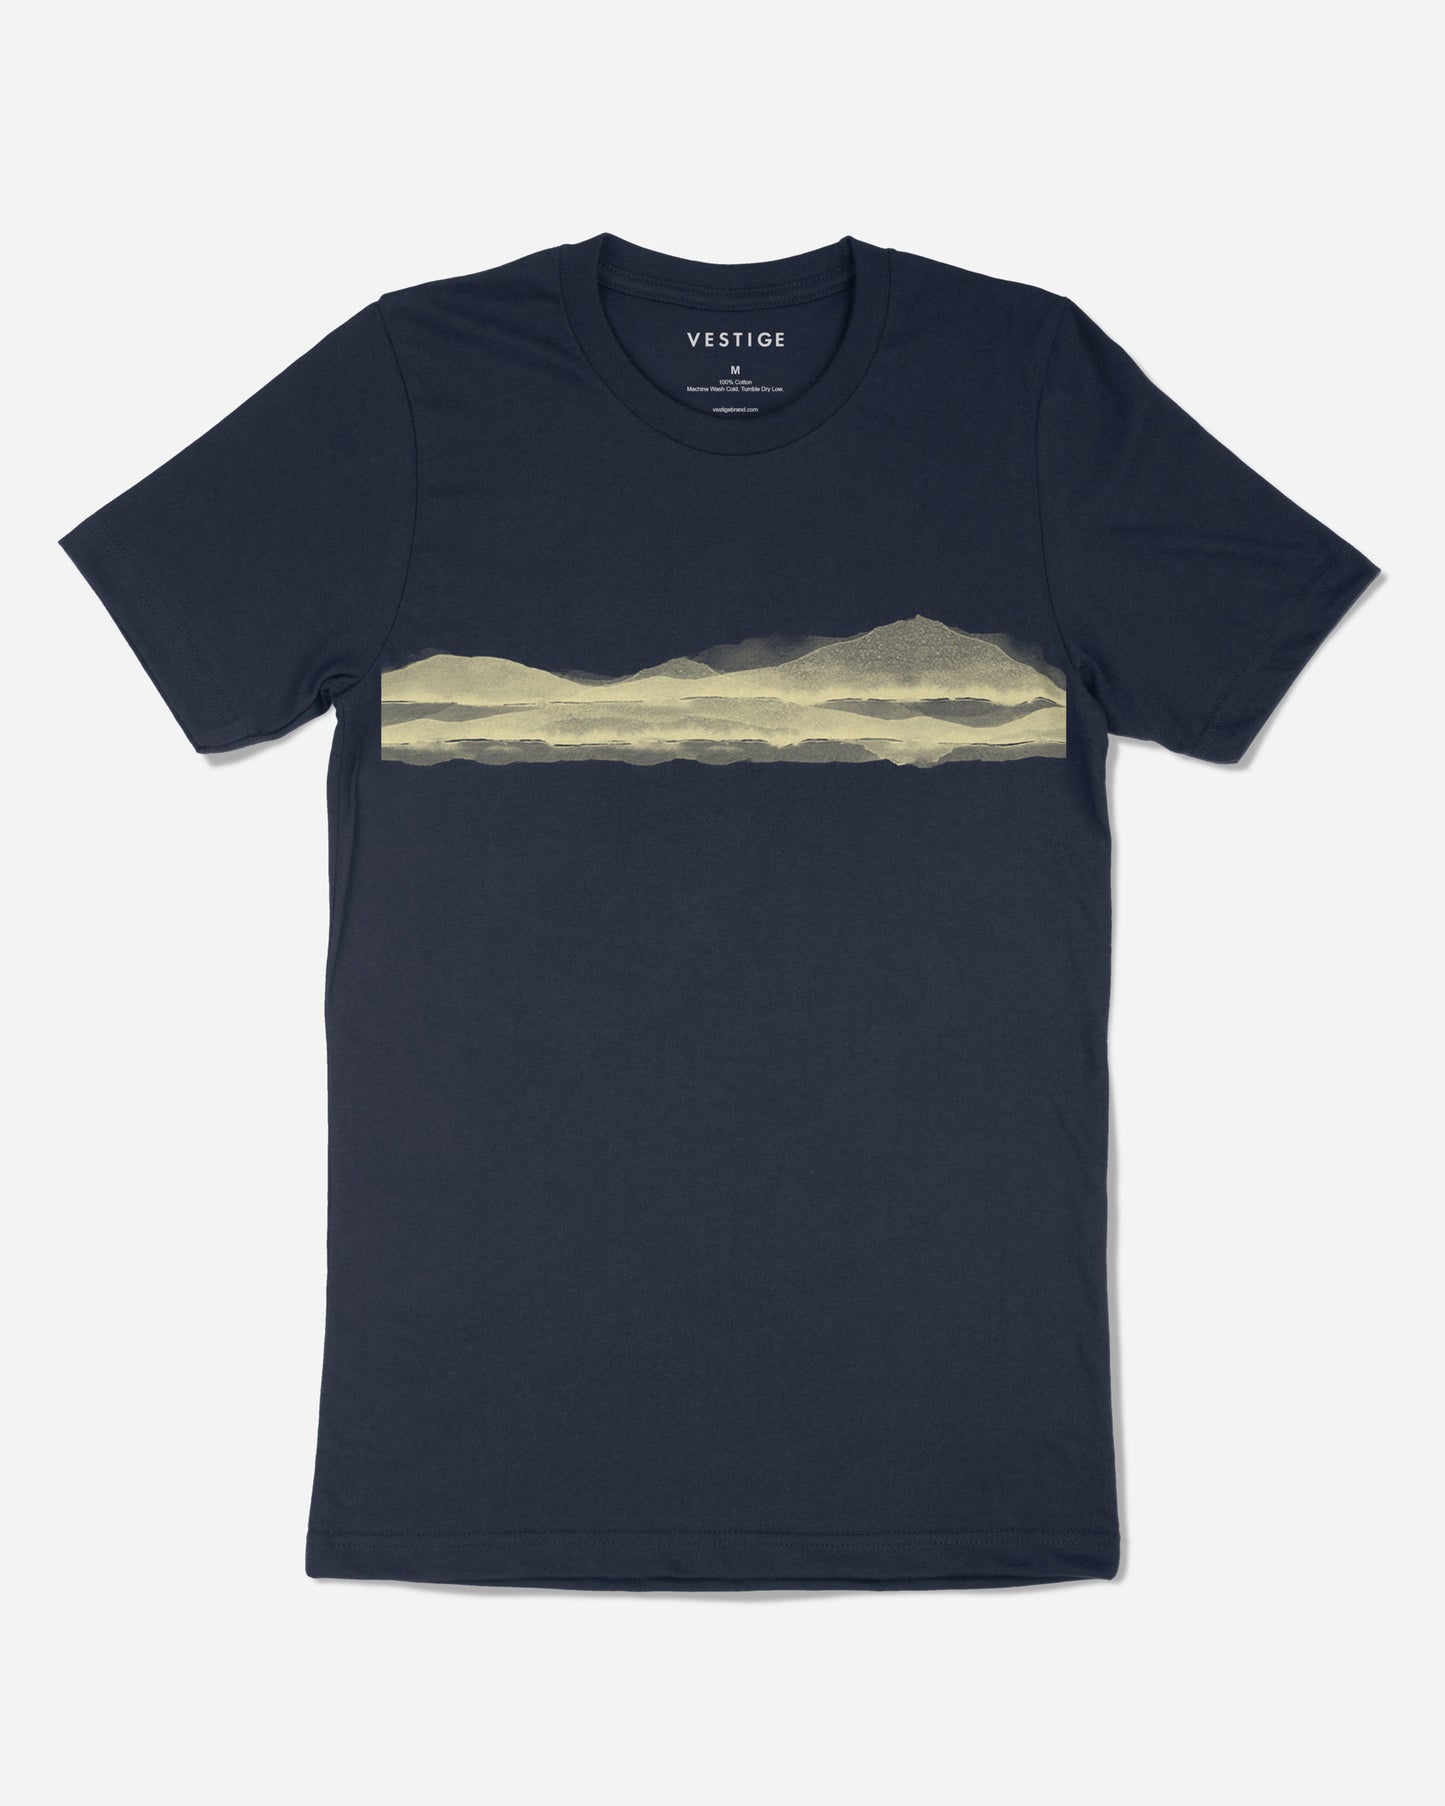 Vista T-Shirt, Navy